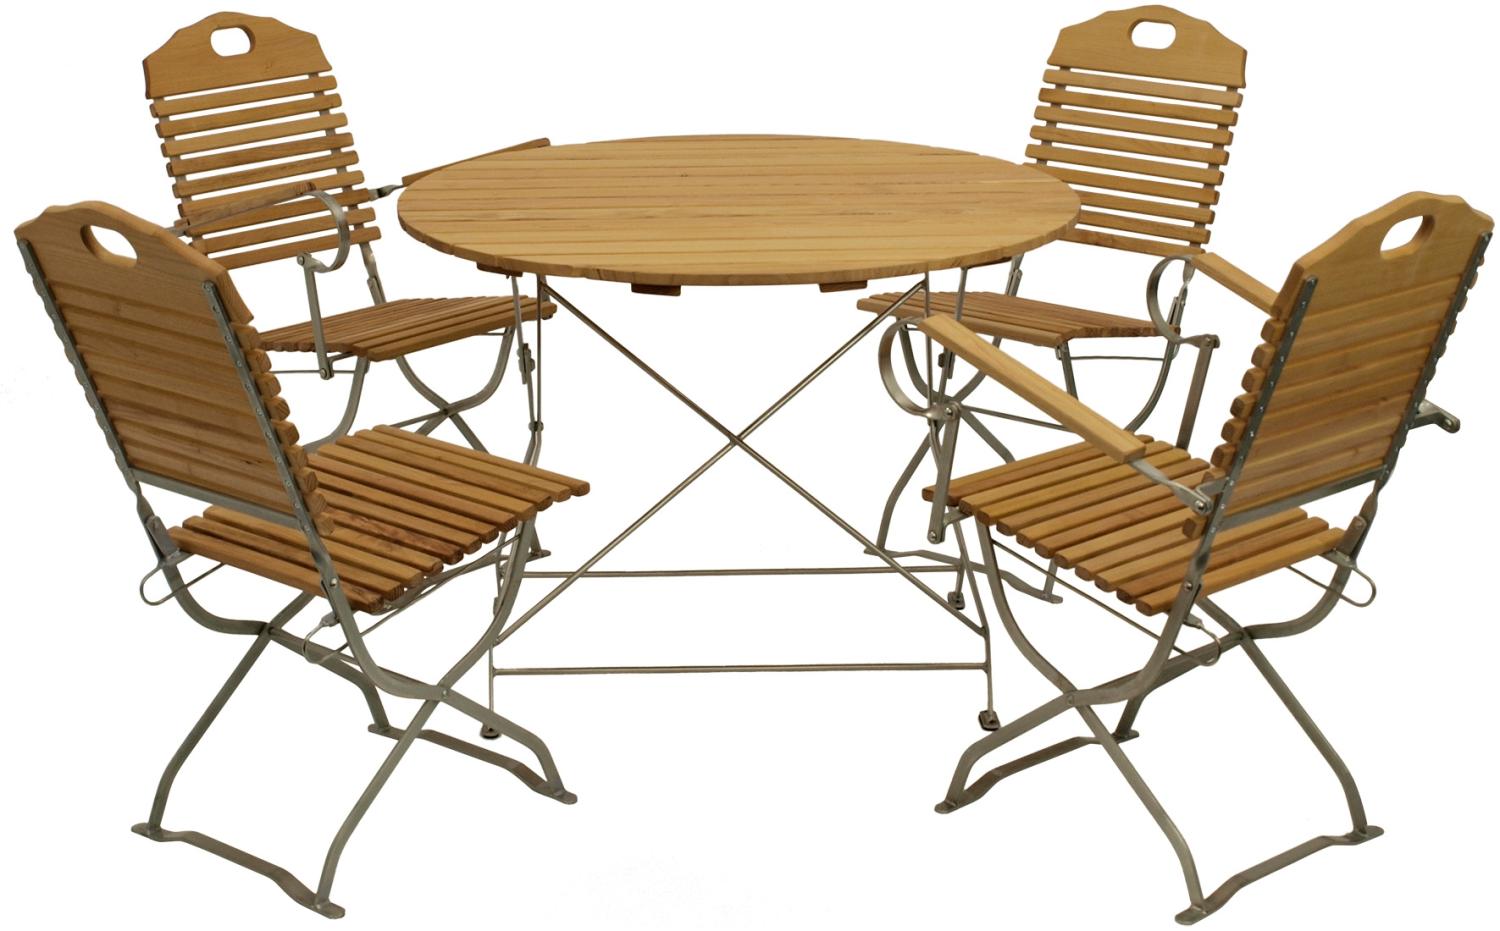 Kurgarten - Garnitur BAD TÖLZ 5-teilig (2x Stuhl, 2x Armlehnensessel, 1x Tisch 100cm rund), Flachstahl verzinkt + Robinie, klappbar Bild 1